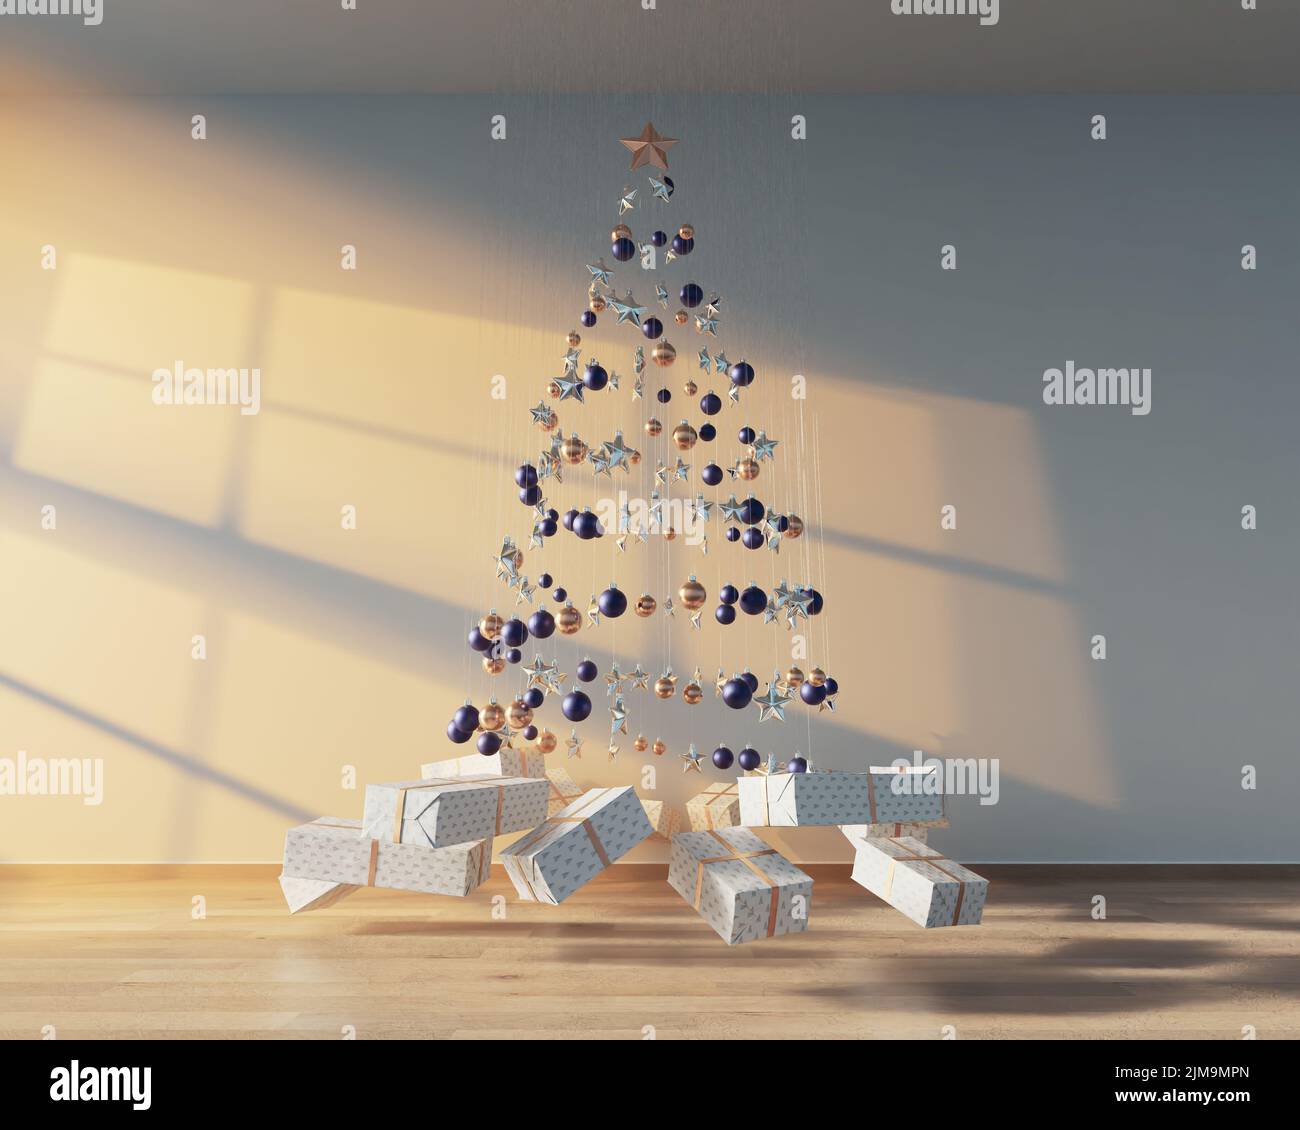 Un concepto de una colección de decoraciones de navidad colgantes que hacen la forma de un árbol con regalos envueltos suspendidos debajo de la luz del sol - 3D render Foto de stock